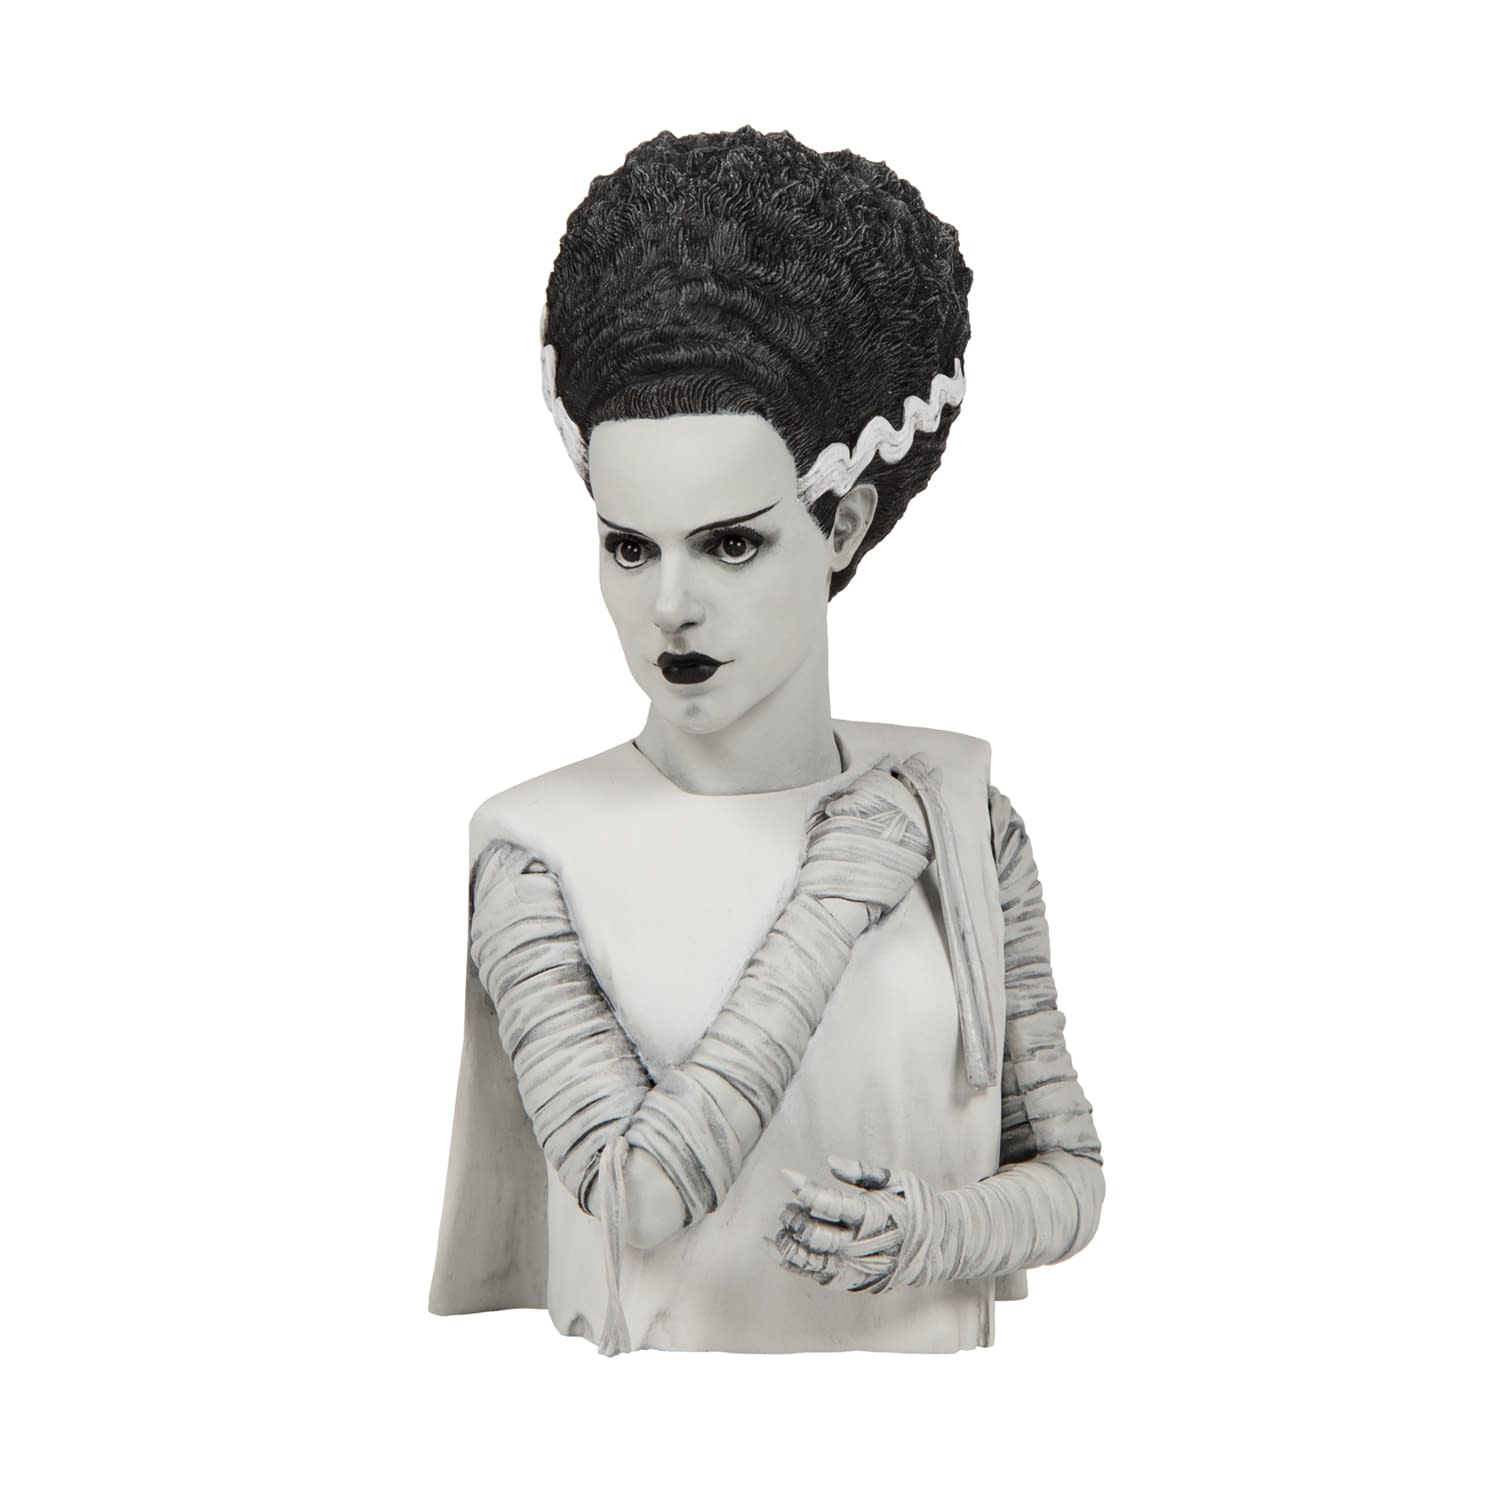 Bride Of Frankenstein Vinyl, Figure Debut From Waxwork Records